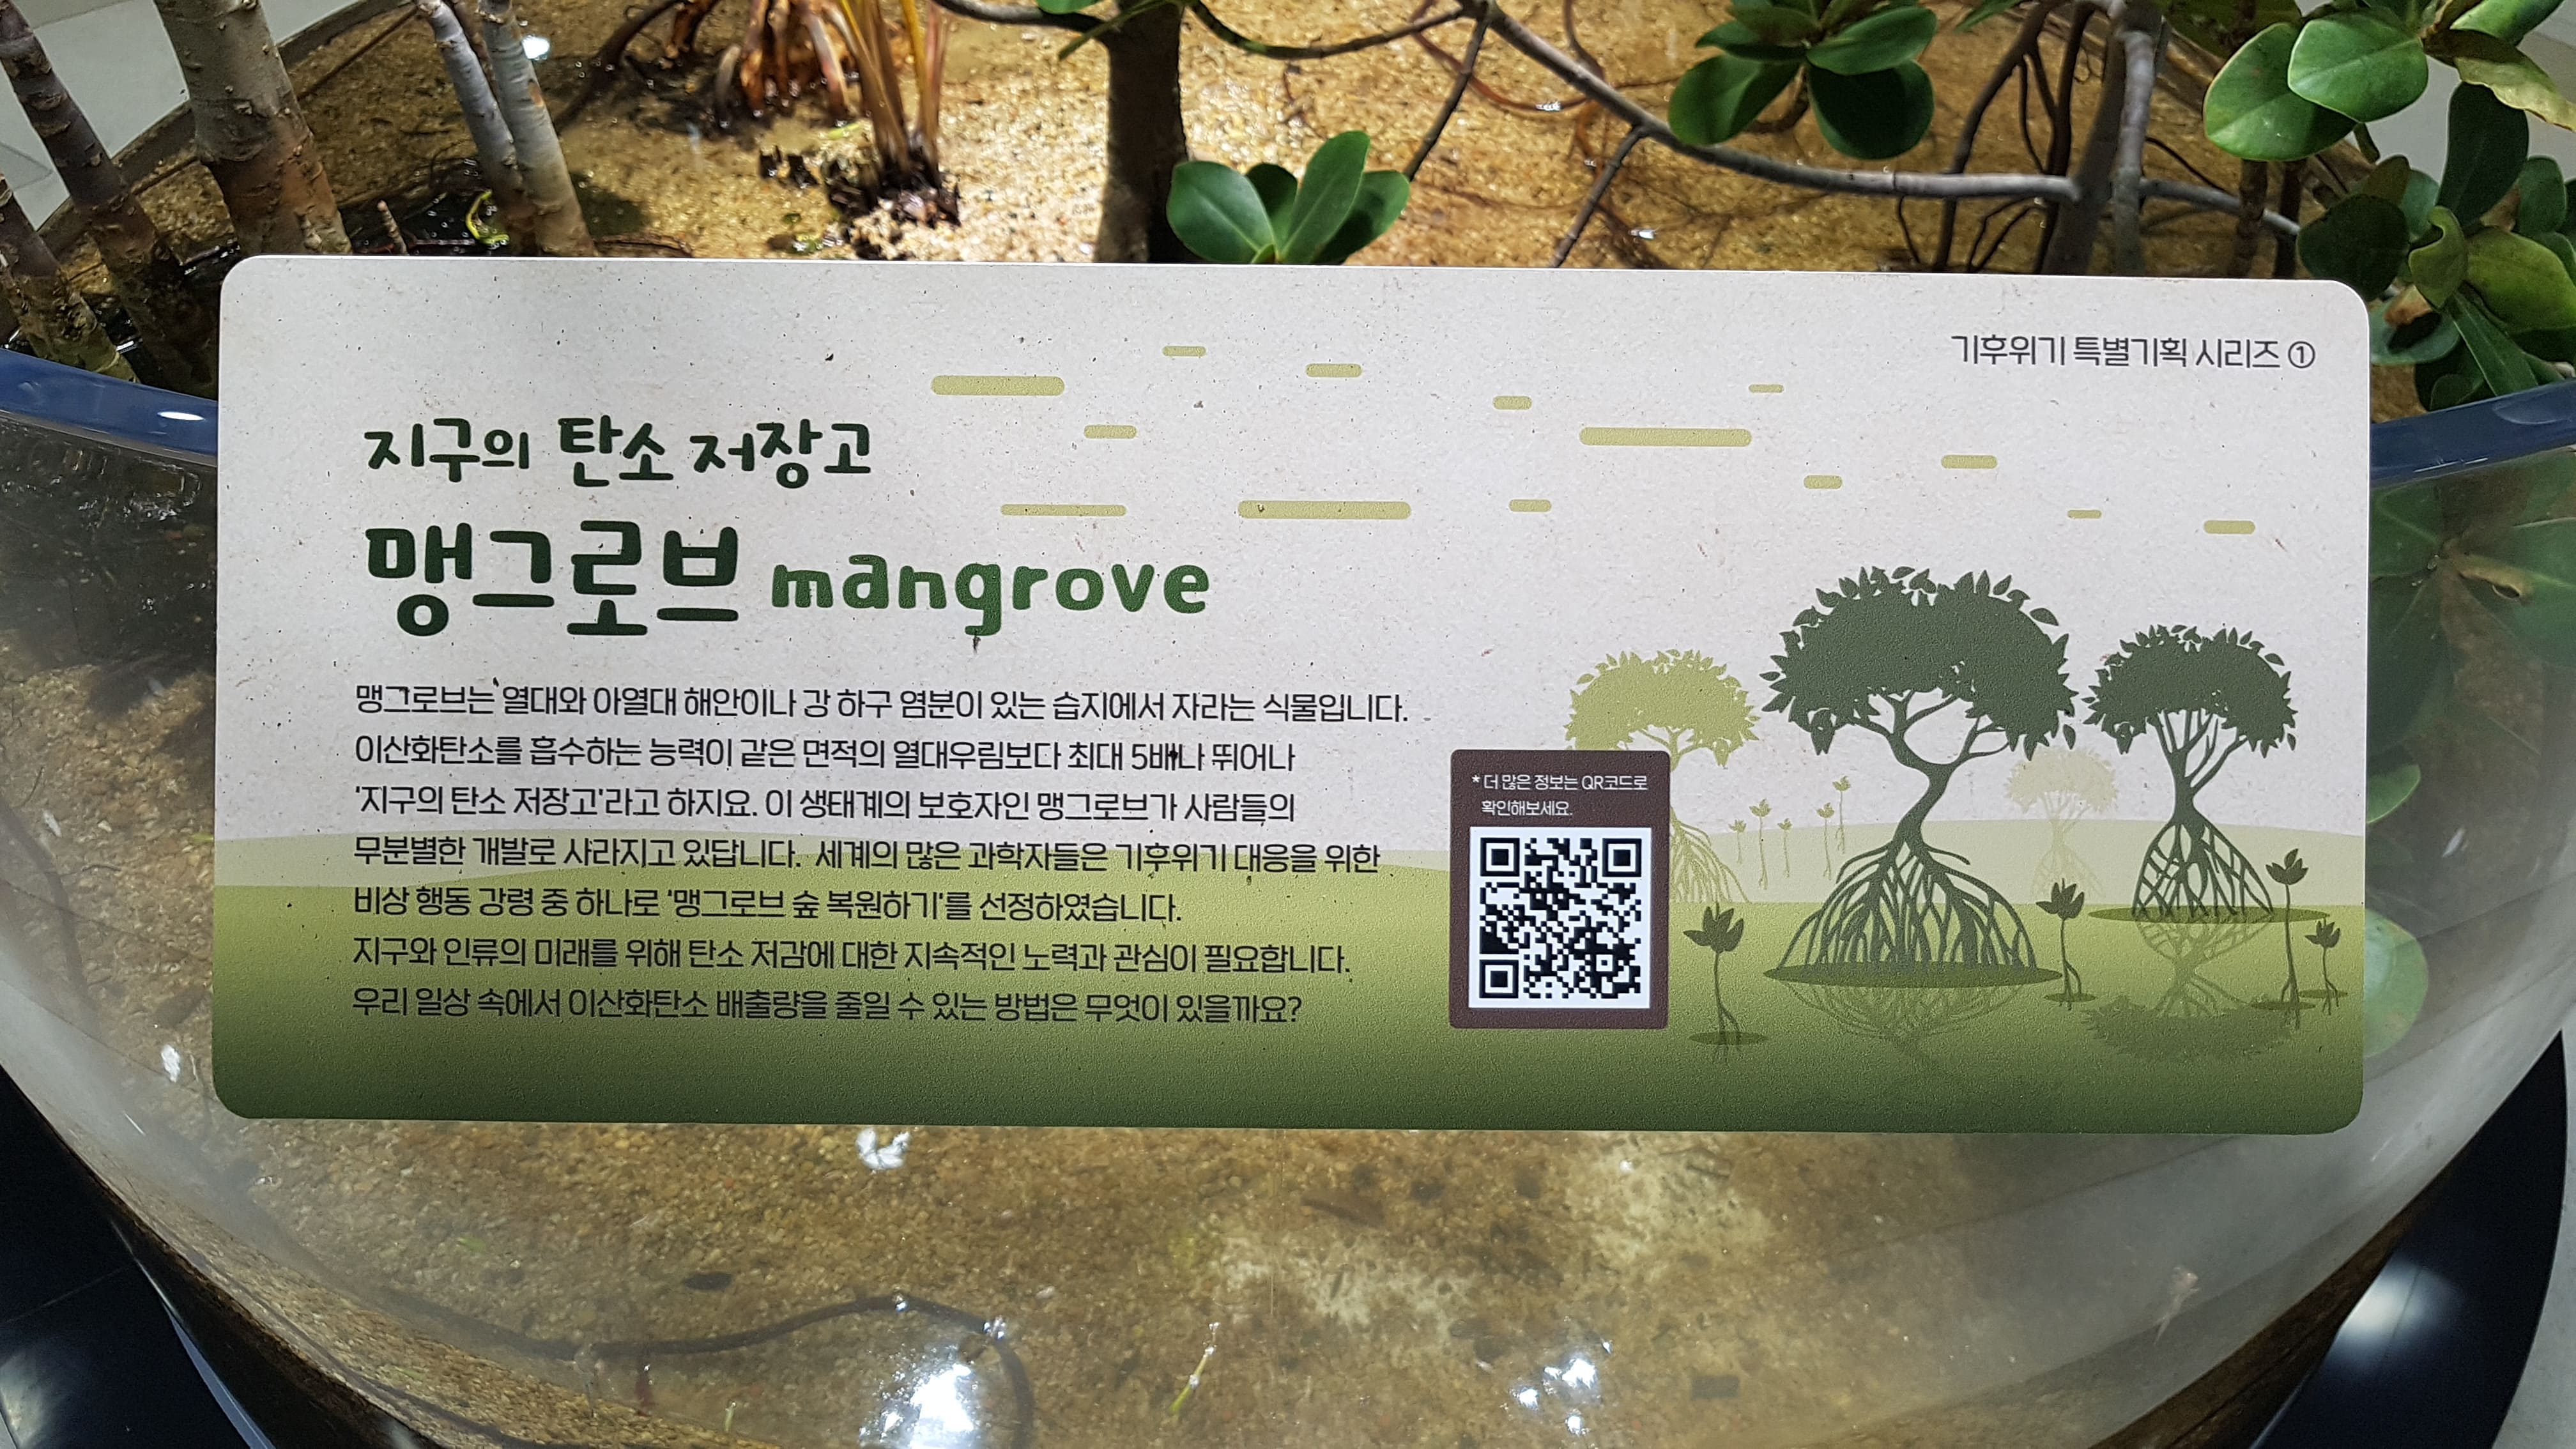 지구의 탄소 저장고 ‘맹그로브’ - mangrove   에코리움 중앙 로비 2021-04-27(화)~ 국립생태원